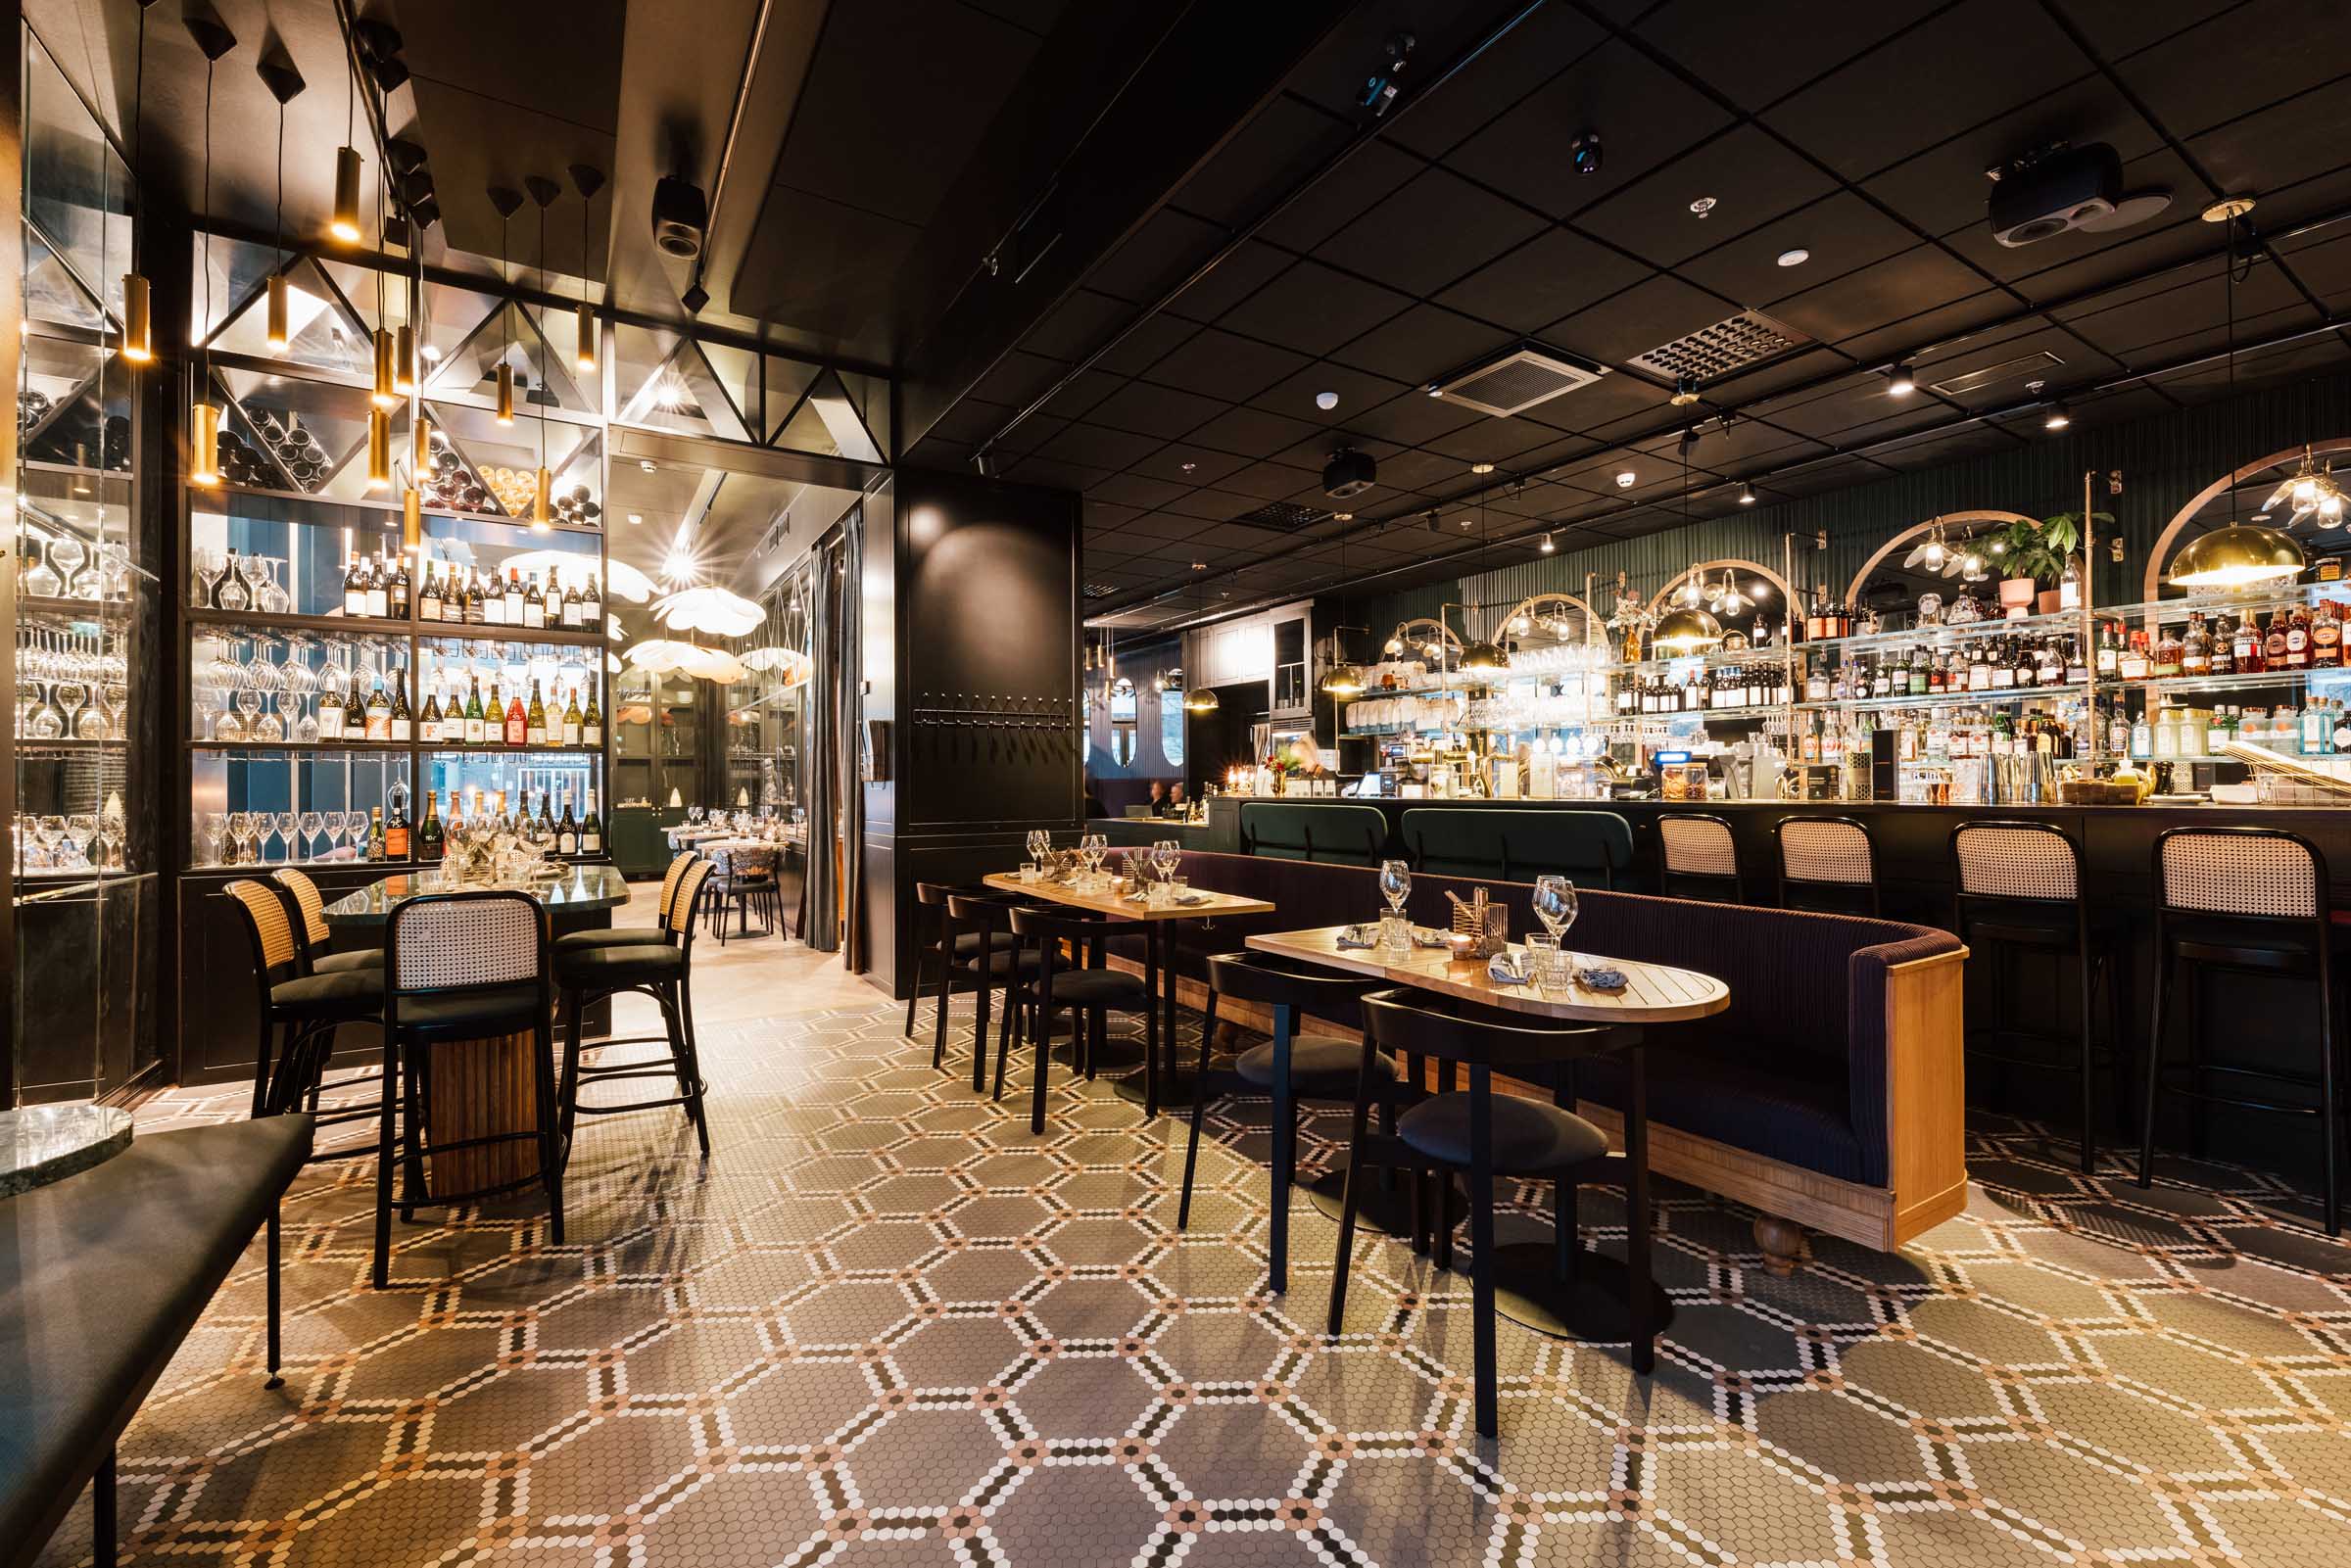 Ravintola Alfred Kitchen & Bar, sisääntulon näkymä ravintolasaliin, kuvioitu mosaiikkilattia, pöytäryhmät ja baaritiski.